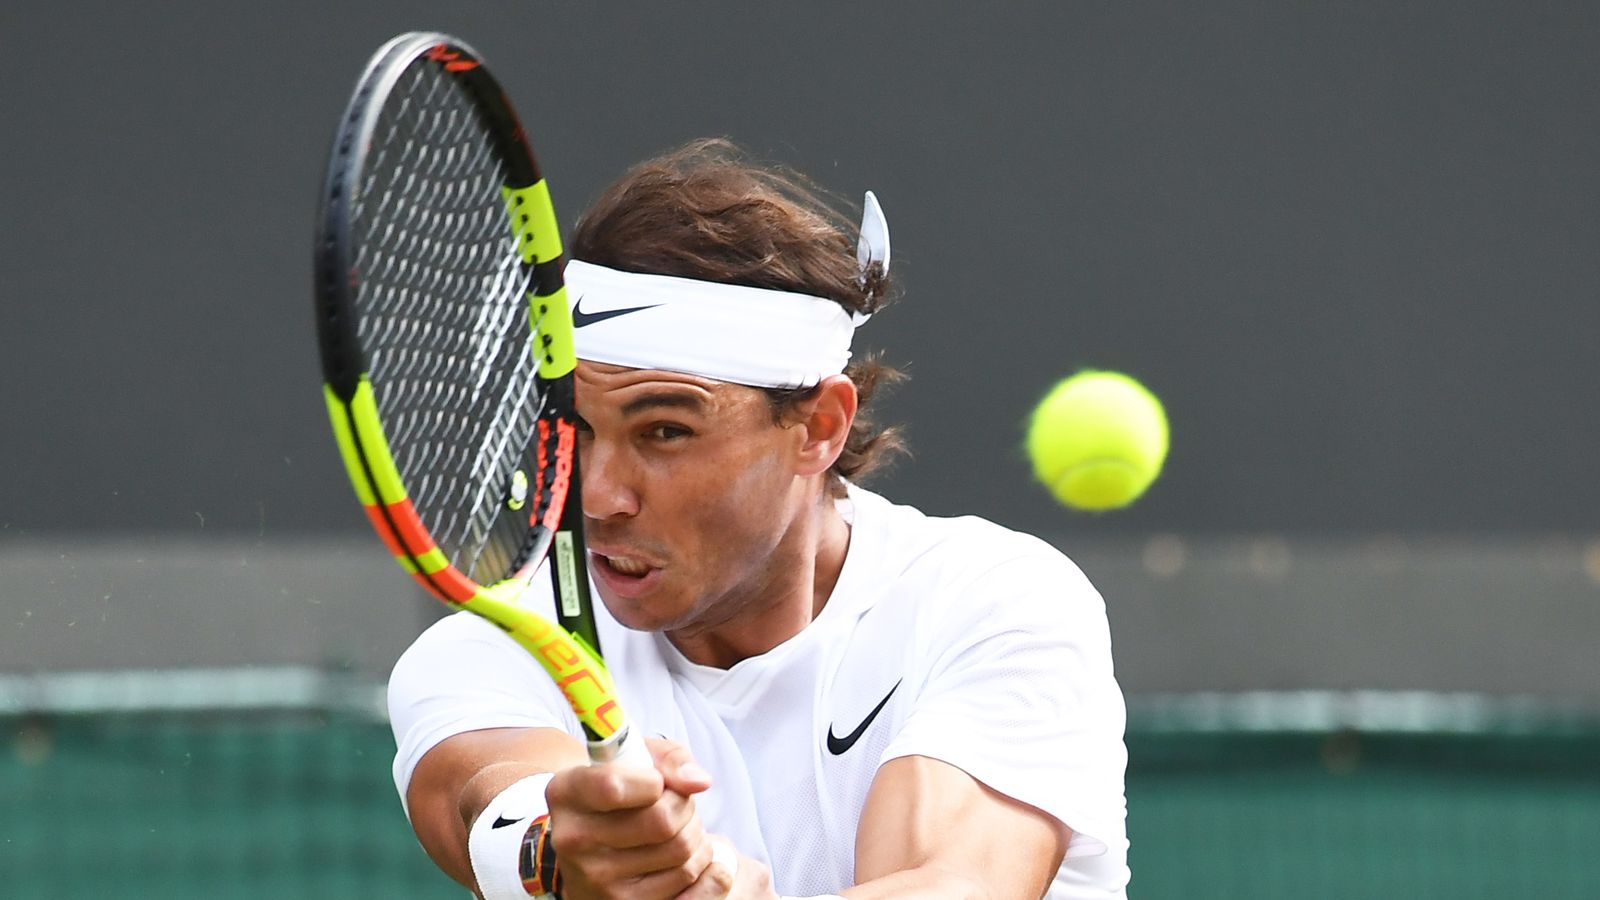 Nadal vs. Federer - Wimbledon Halbfinale 2019 HEUTE LIVE im TV und Stream | Tennis ...